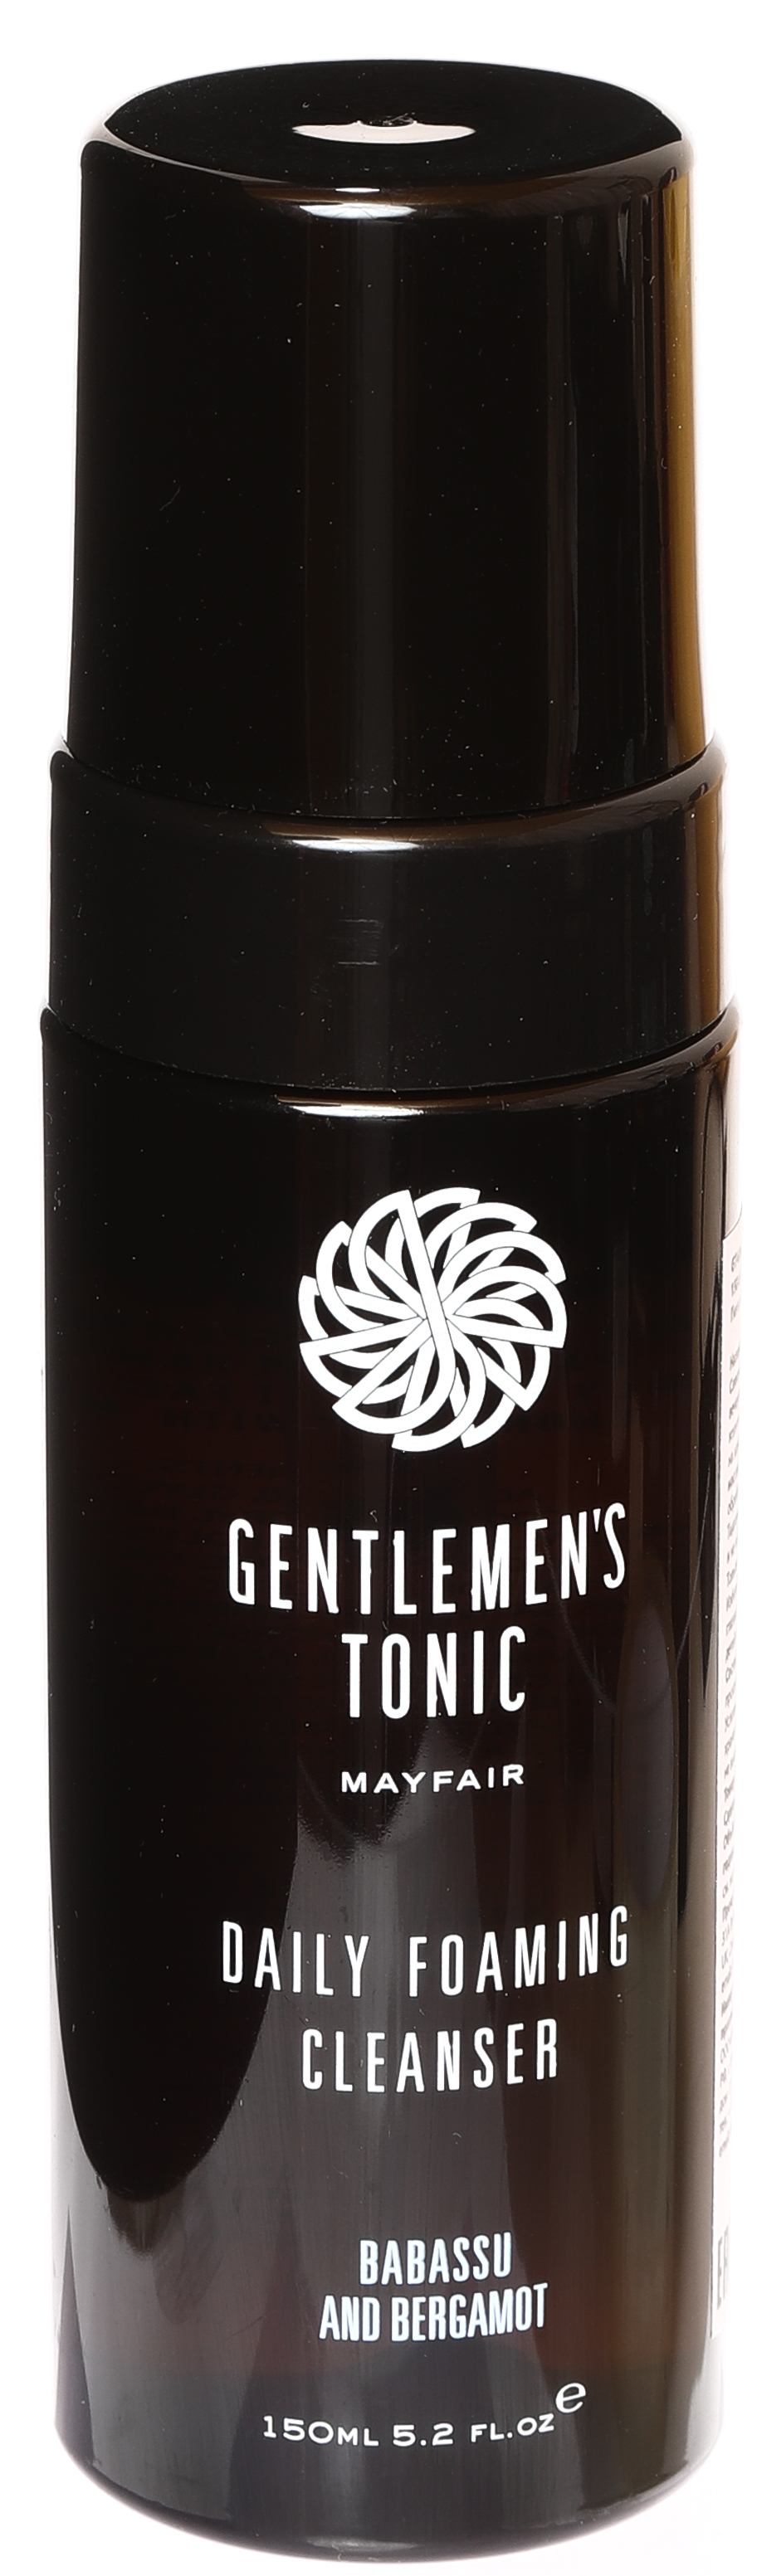 Пенка для умывания очищающая для мужчин Gentlemen's Tonic 150 мл gentlemen s tonic масло до бритья для мужчин